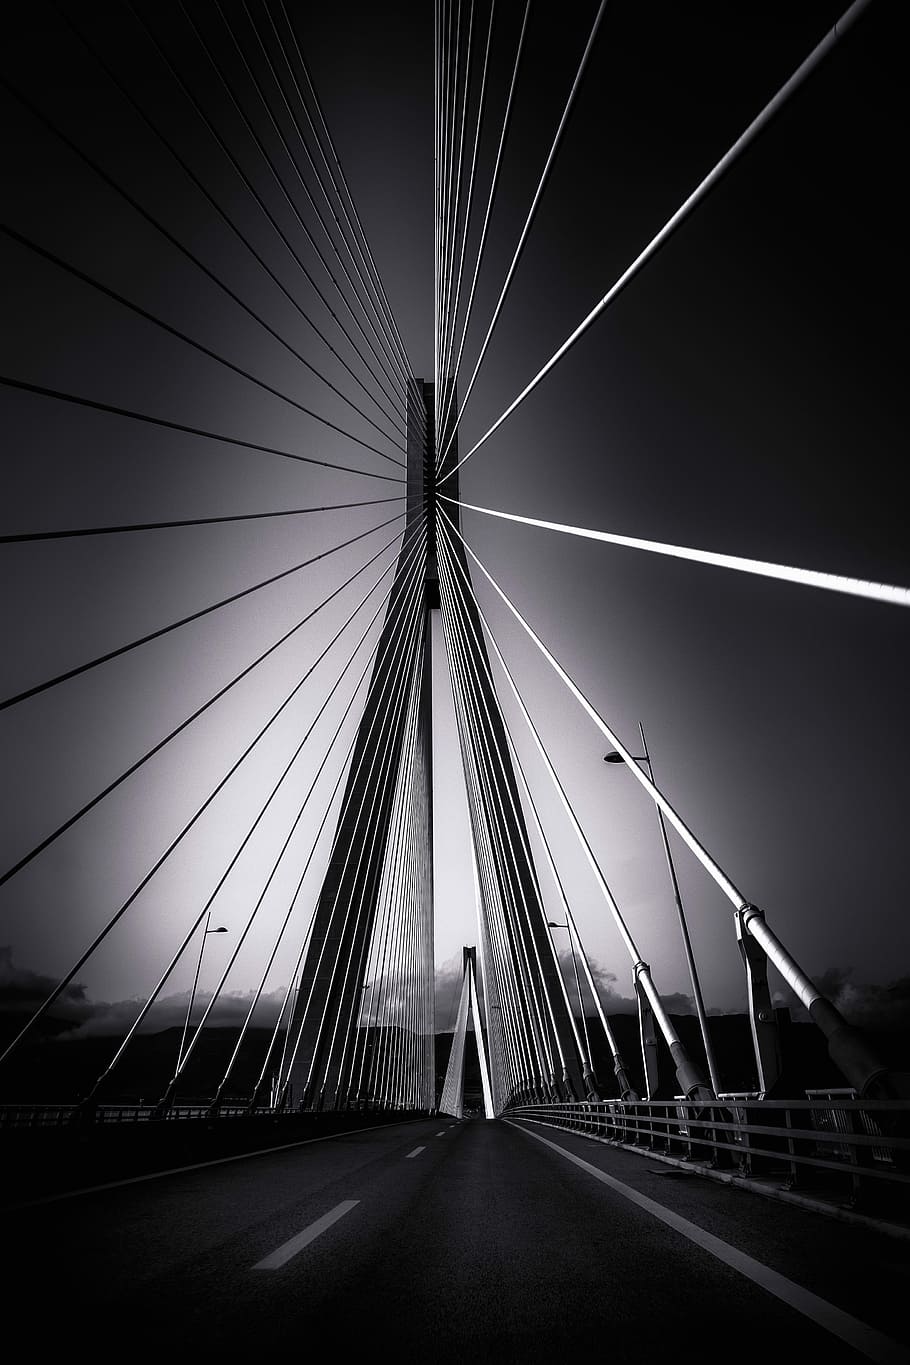 fotografia em escala de cinza, ponte, ponte rio – antirrio, ponte estaiada, arquitetura, grécia, preto e branco, transporte, conexão, ponte - estrutura feita pelo homem